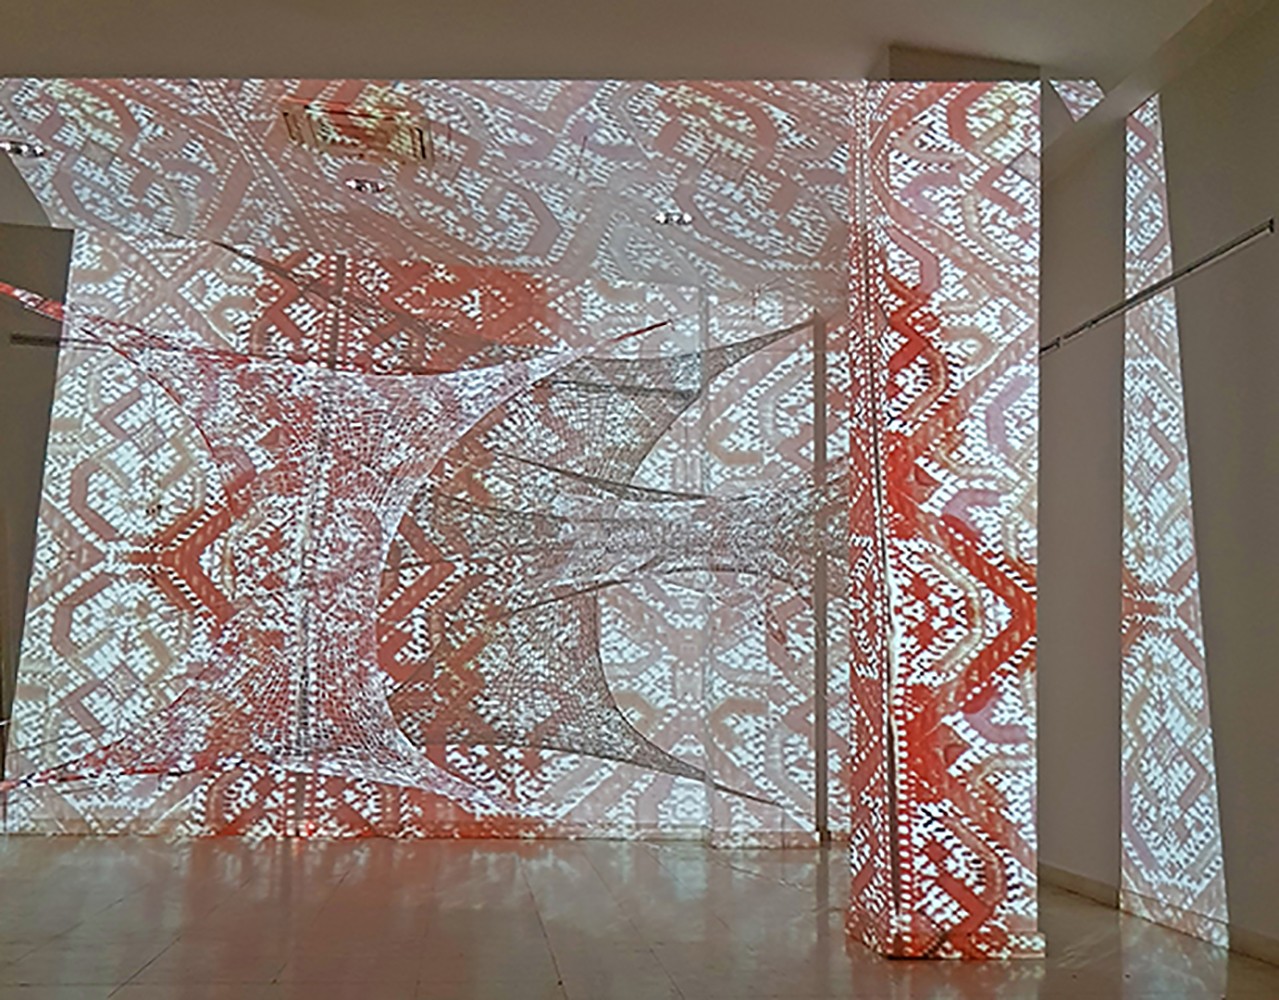 TRANSPOZICIJA 02, 400 × 260 × 300 cm, elastične trake, pletenje, video projekcija Samostalna izložba Linije koda Zadužbina Save Tekelije, Budimpešta, Republika Mađarska, 2019.